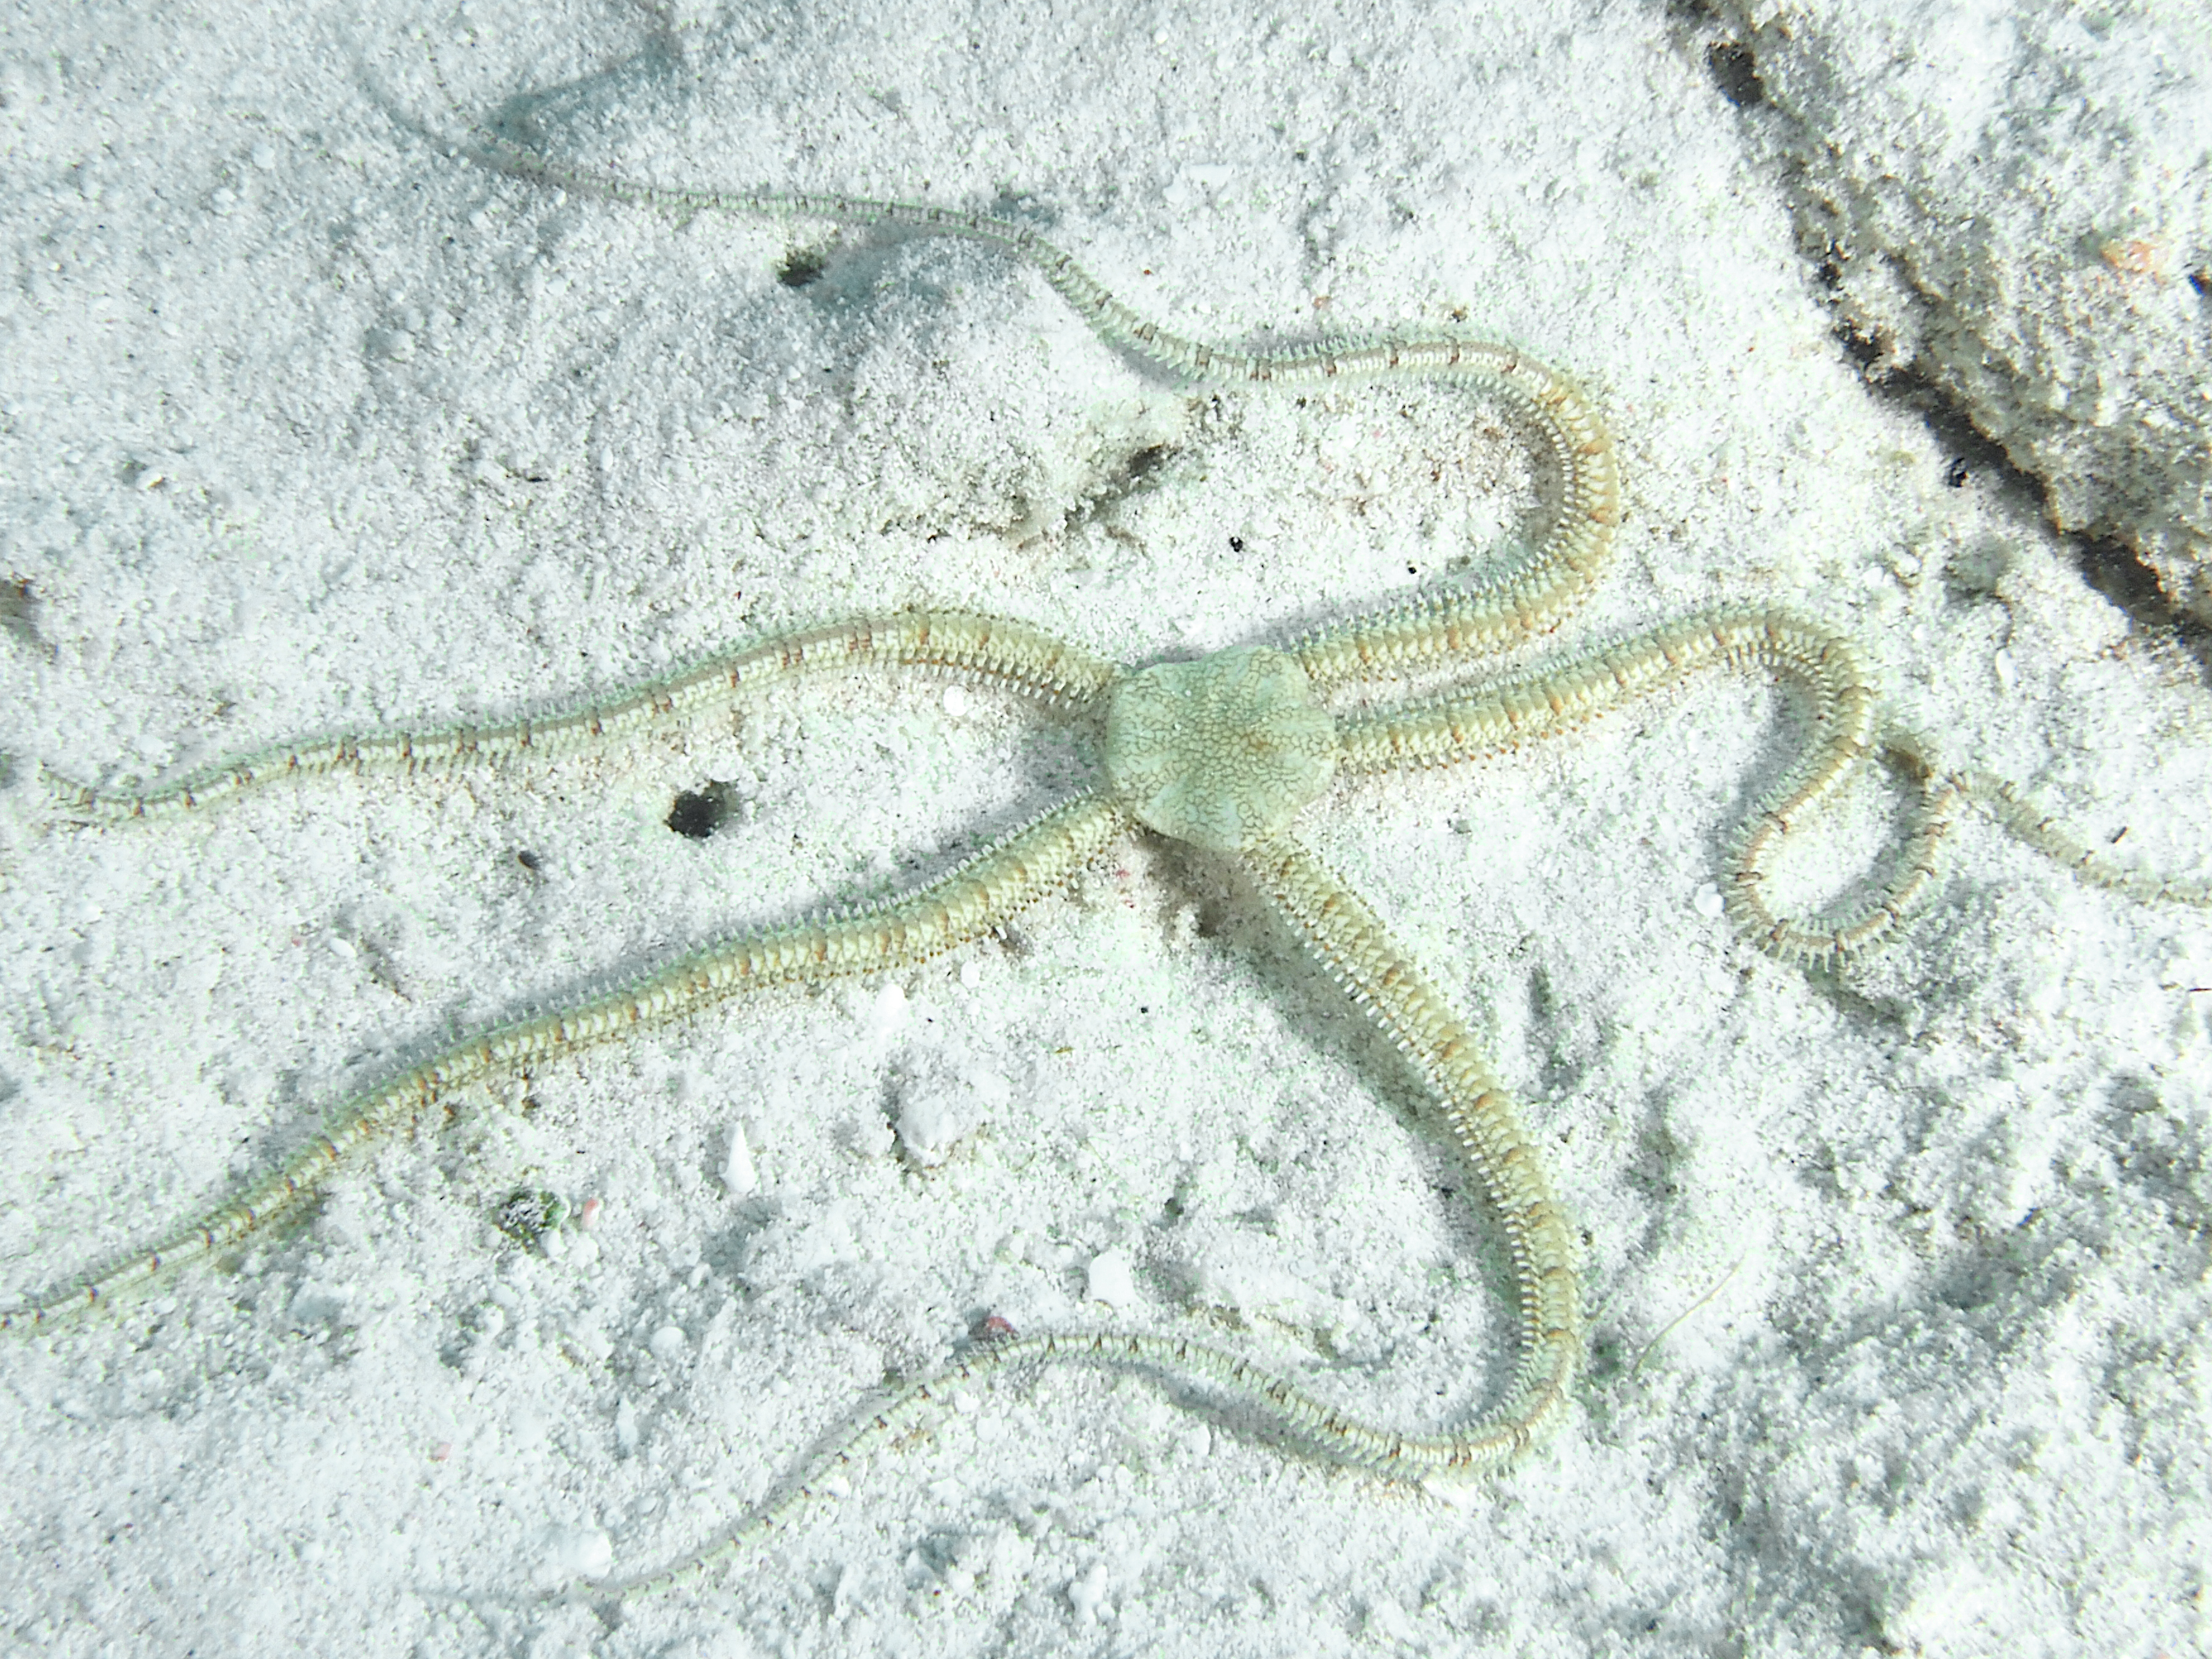 Reticulated Brittle Star - Ophionereis reticulata